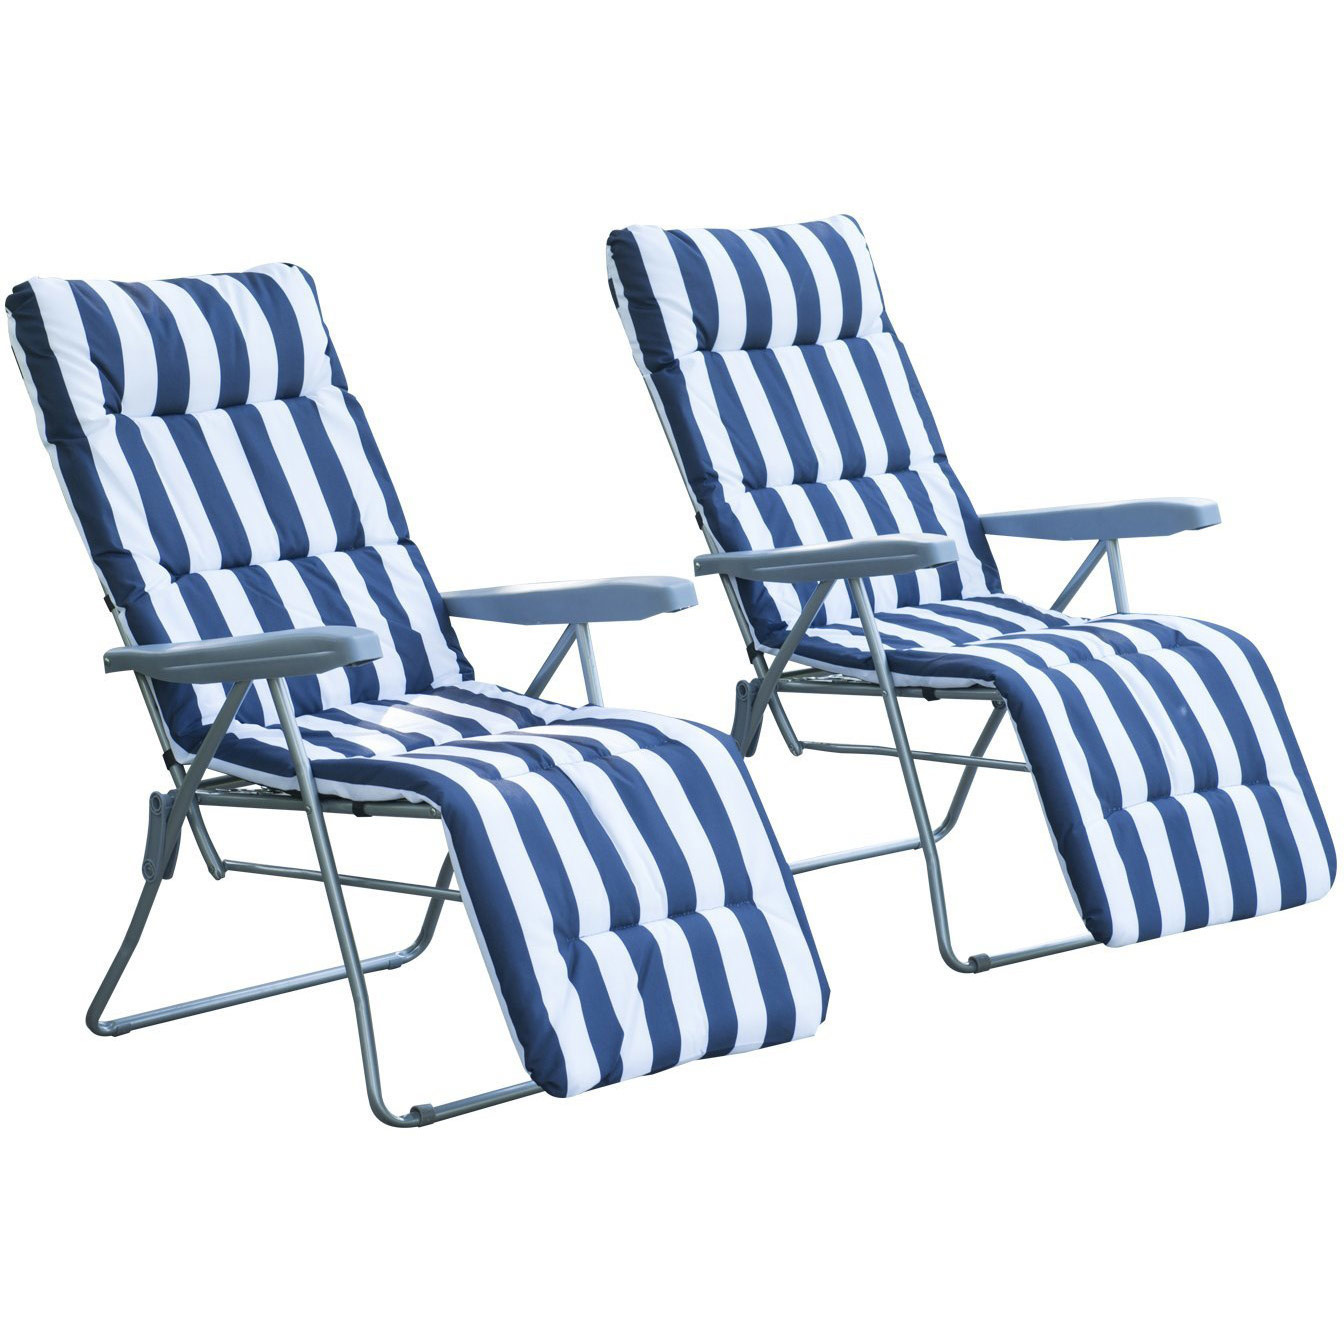 Sunny Ligstoelenset met armsteun en ligkussens opvouwbaar blauw-wit 2stuks